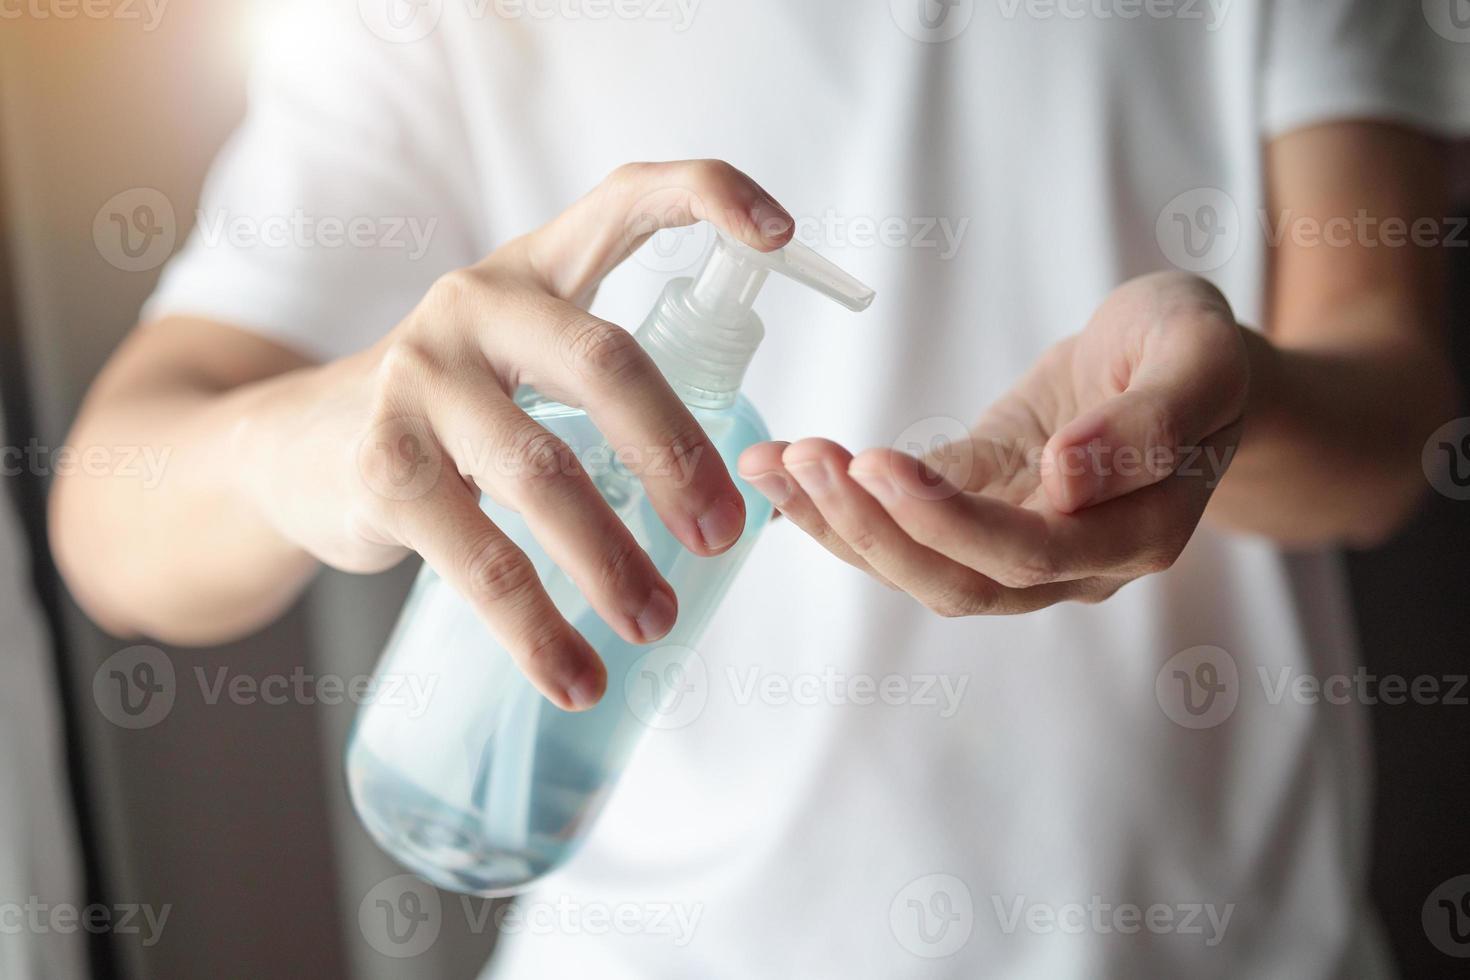 hombre que usa gel desinfectante con alcohol para limpiar la mano concepto de prevención del virus corona covid-19 foto